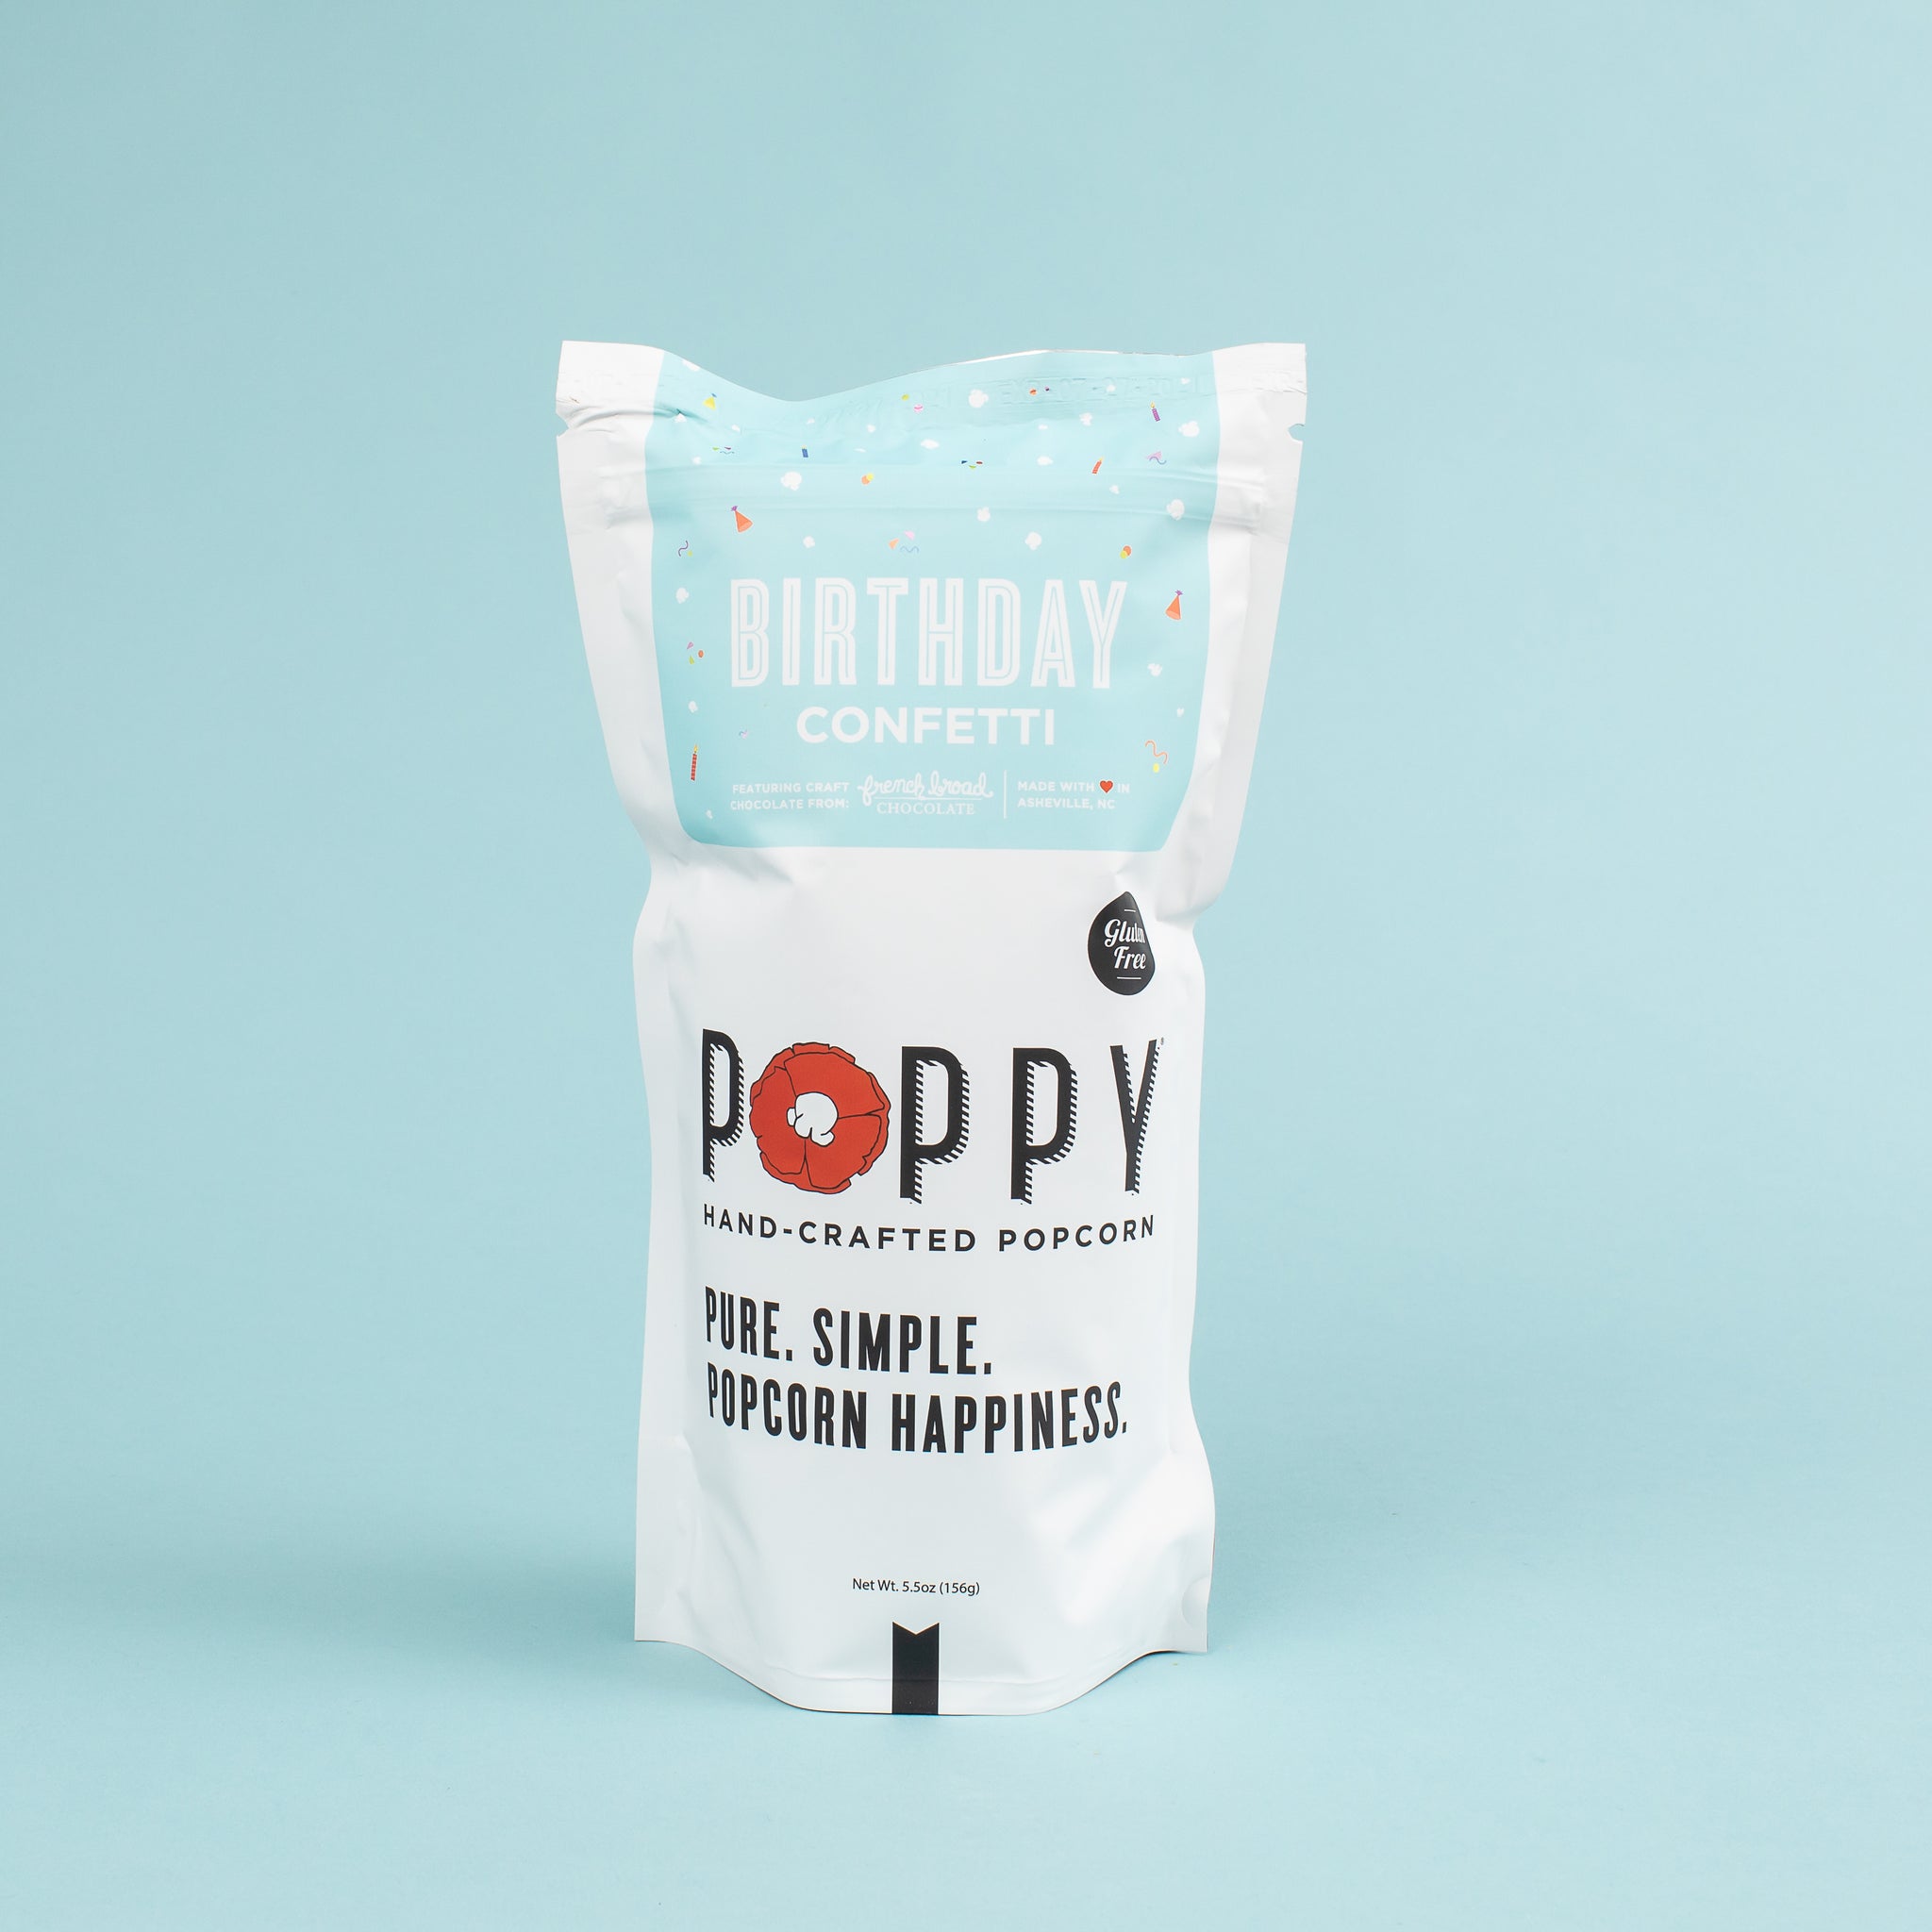 Poppy Handcrafted Popcorn - Birthday Confetti